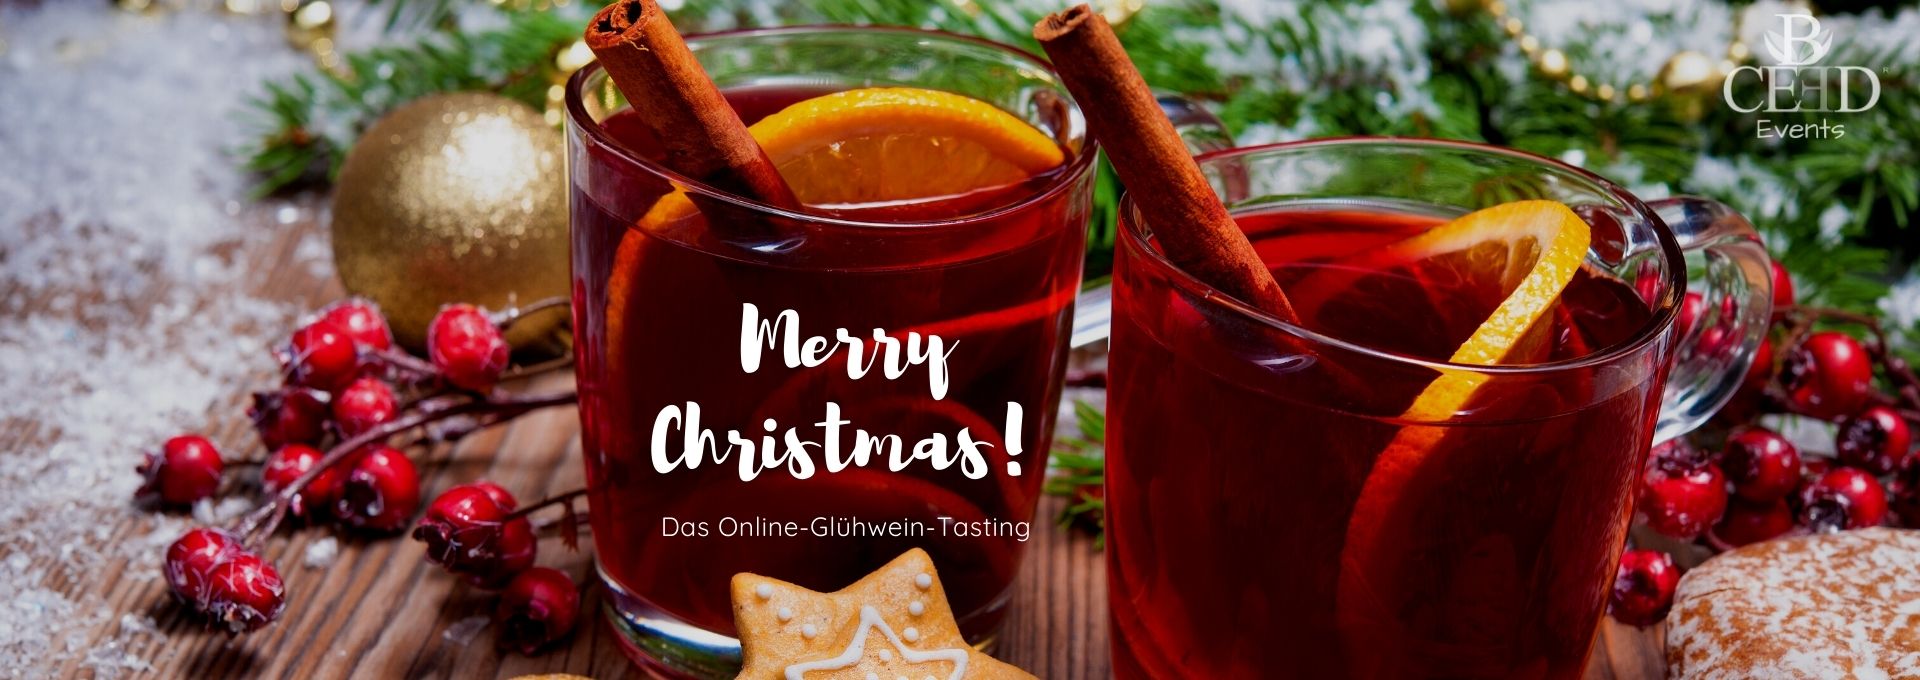 Online Weihnachtsfeier - virtuelles Gluehwein Tasting von b-ceed buchen